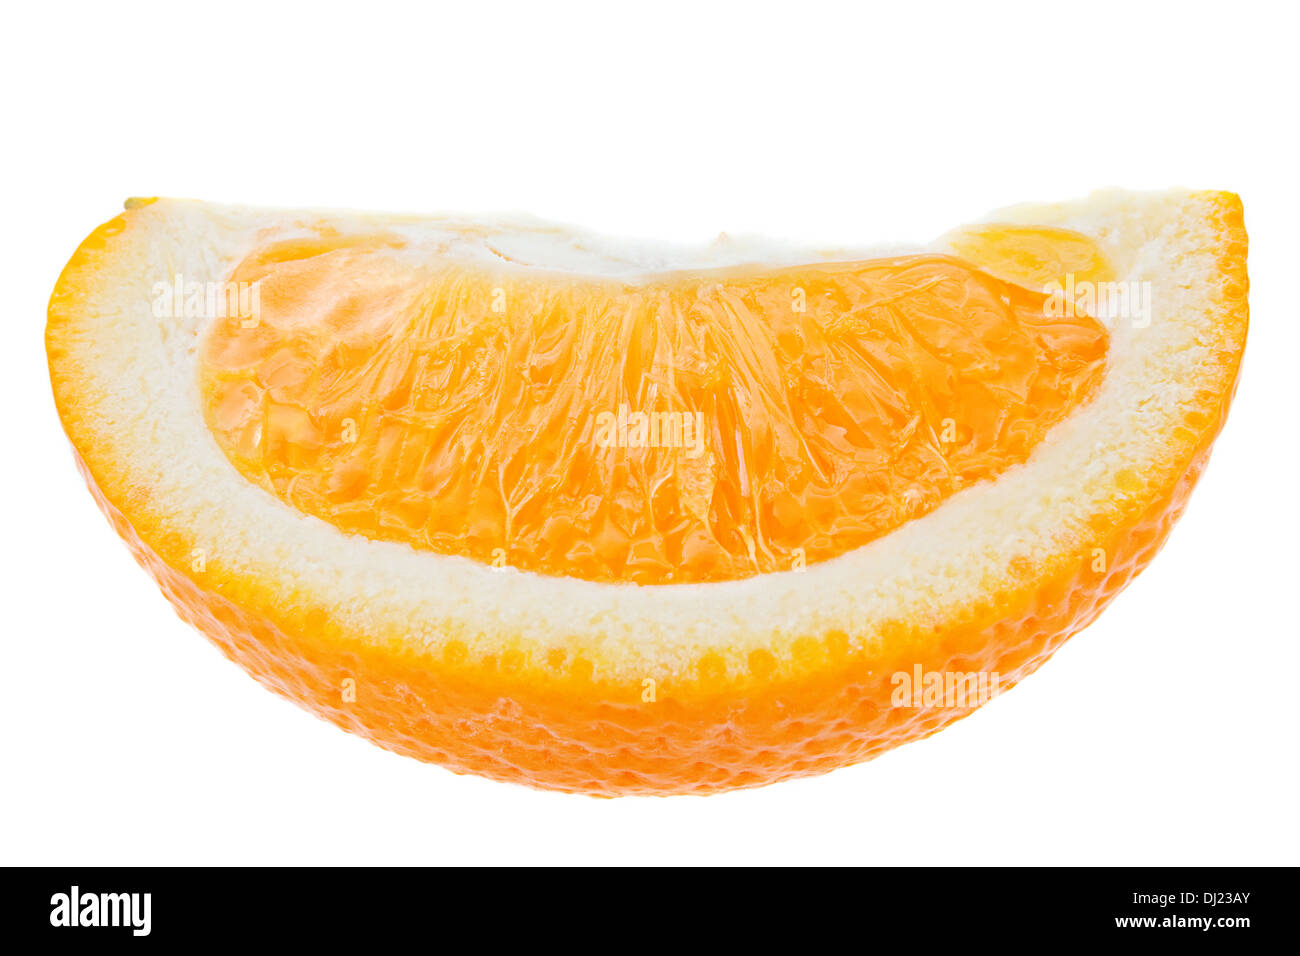 Orange tropical fruit isolated on white Stock Photo